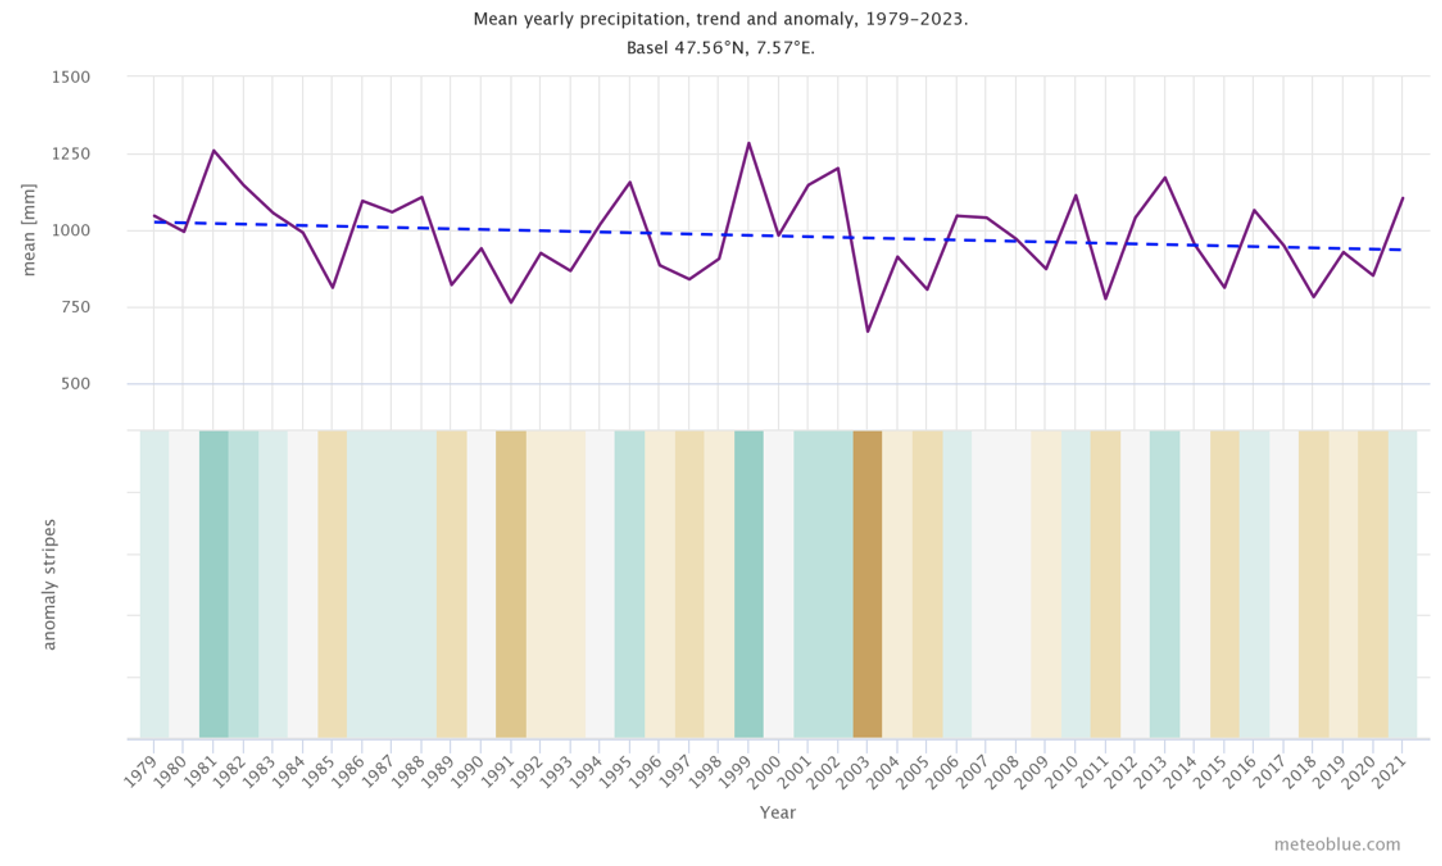 Mittlerer jährlicher Niederschlag, Trend und Anomalie für Basel, Schweiz.